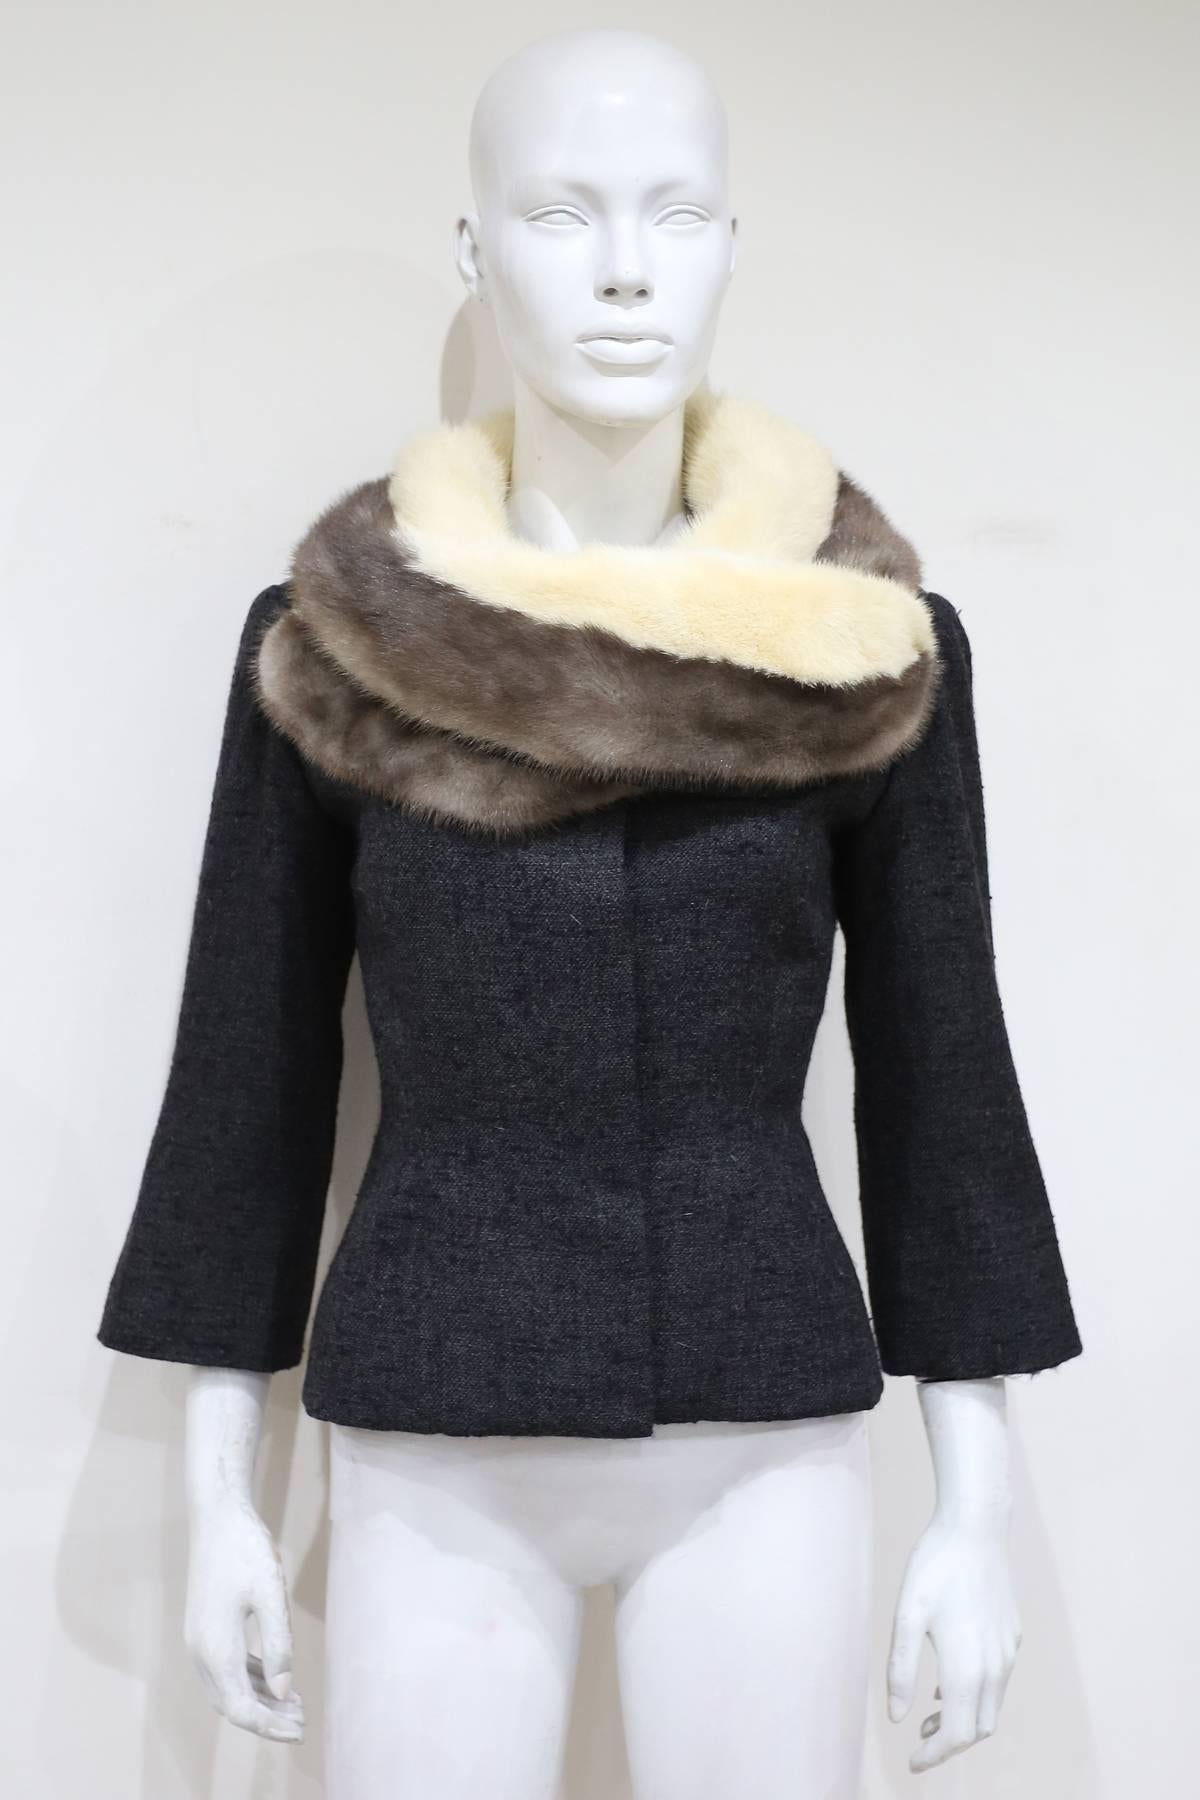 Wir stellen Ihnen ein zeitloses Stück Geschichte vor - die anthrazitfarbene Wolljacke Jeanne Lanvin, ein wahres Schmuckstück aus den 1950er Jahren. Diese Jacke verkörpert unvergleichliche Handwerkskunst, die bis zur Perfektion durchdacht ist. Sein